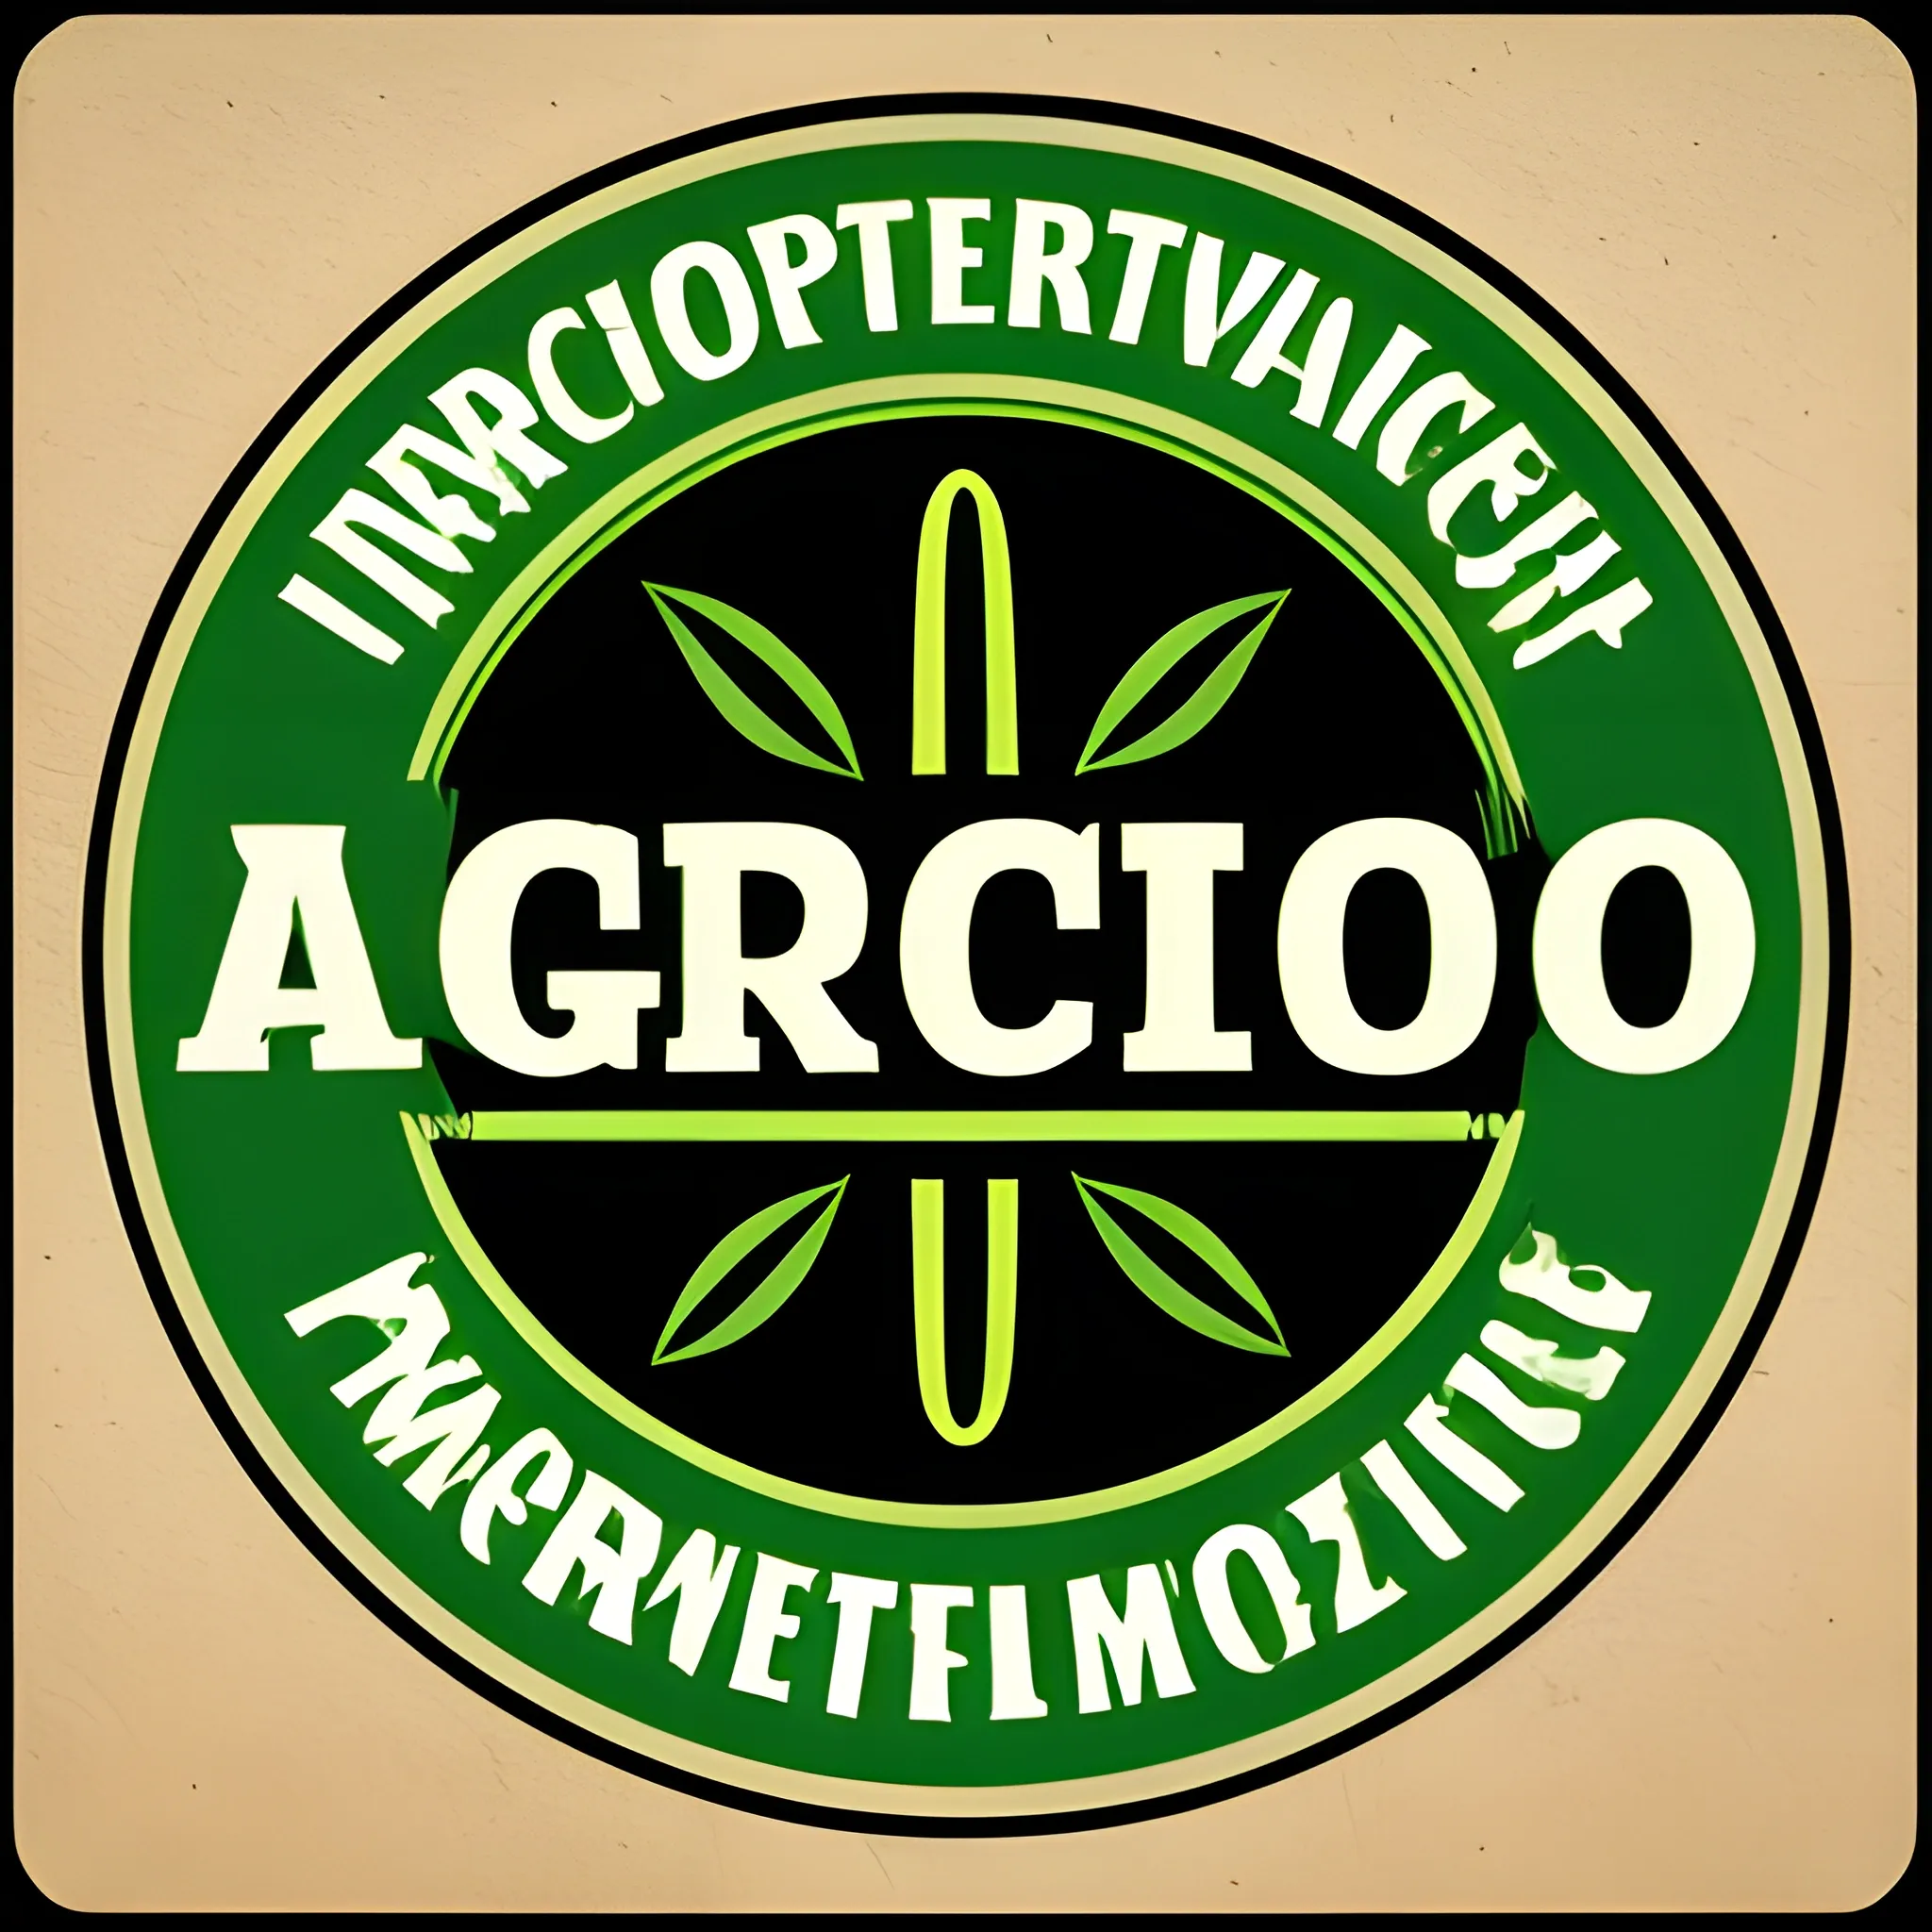 
logo profesional vectorizado agricola editable con el texto AGRO
